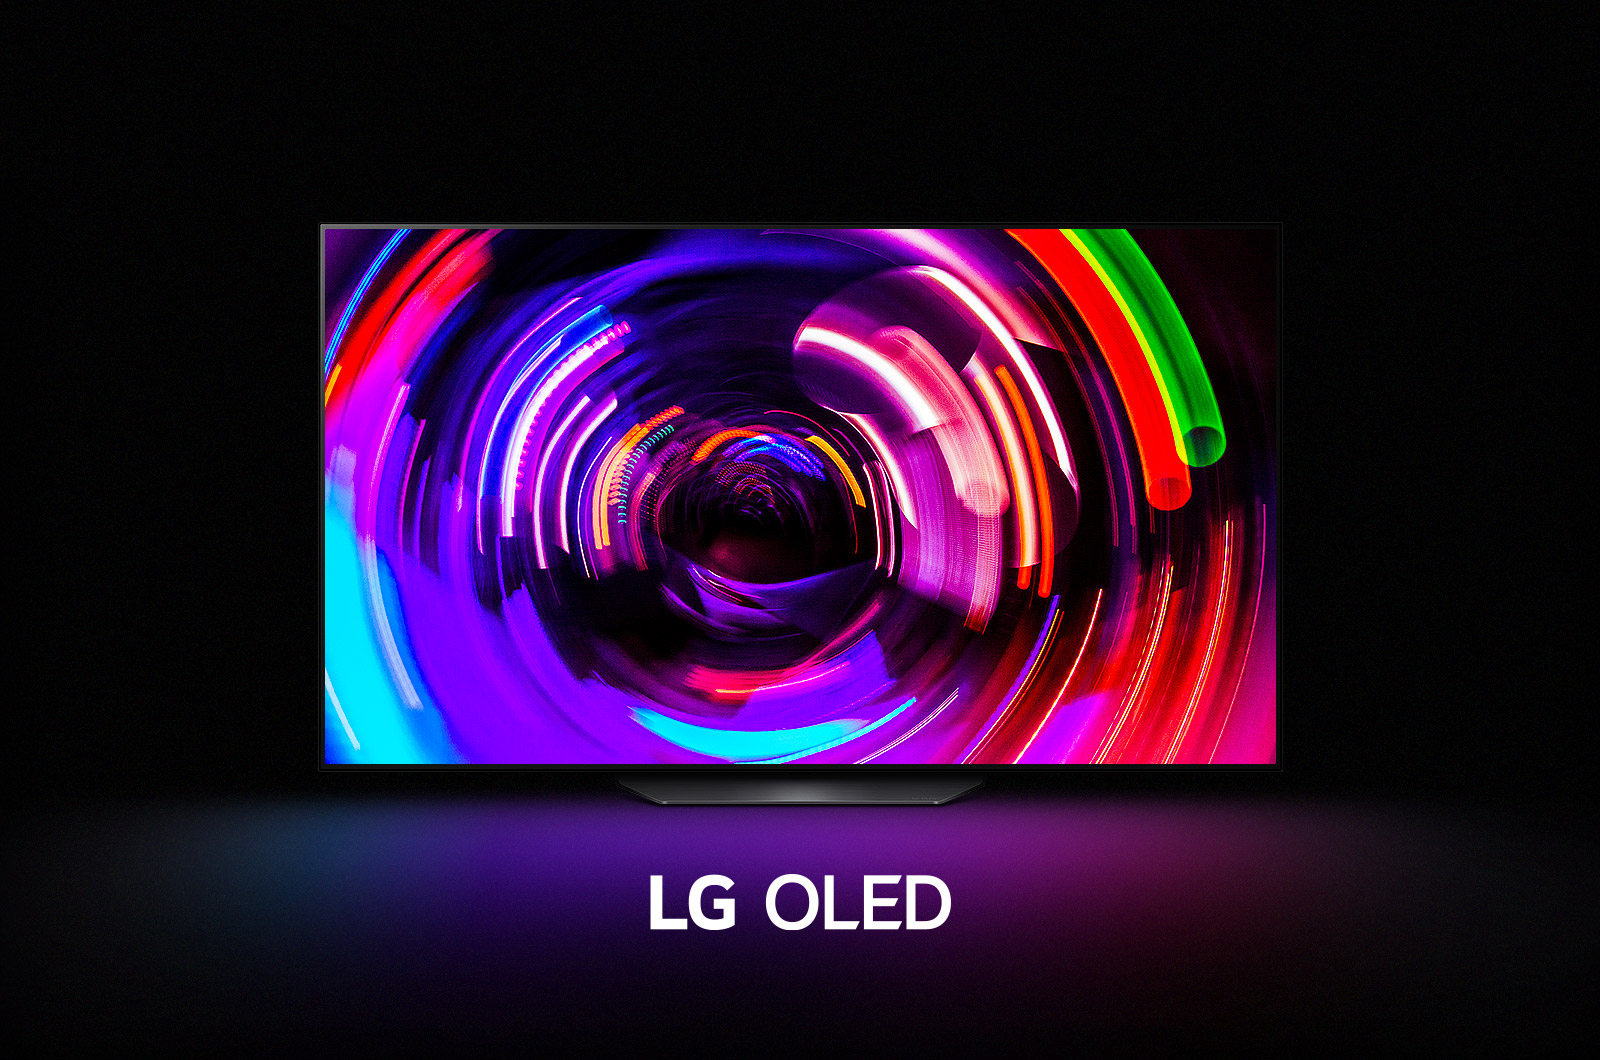 Синий абстрактный волнистый узор заполняет экран, а затем постепенно уменьшается и открывается LG OLED B2. Экран темнеет, затем снова появляется волнообразный узор с надписью «LG OLED» под ним.